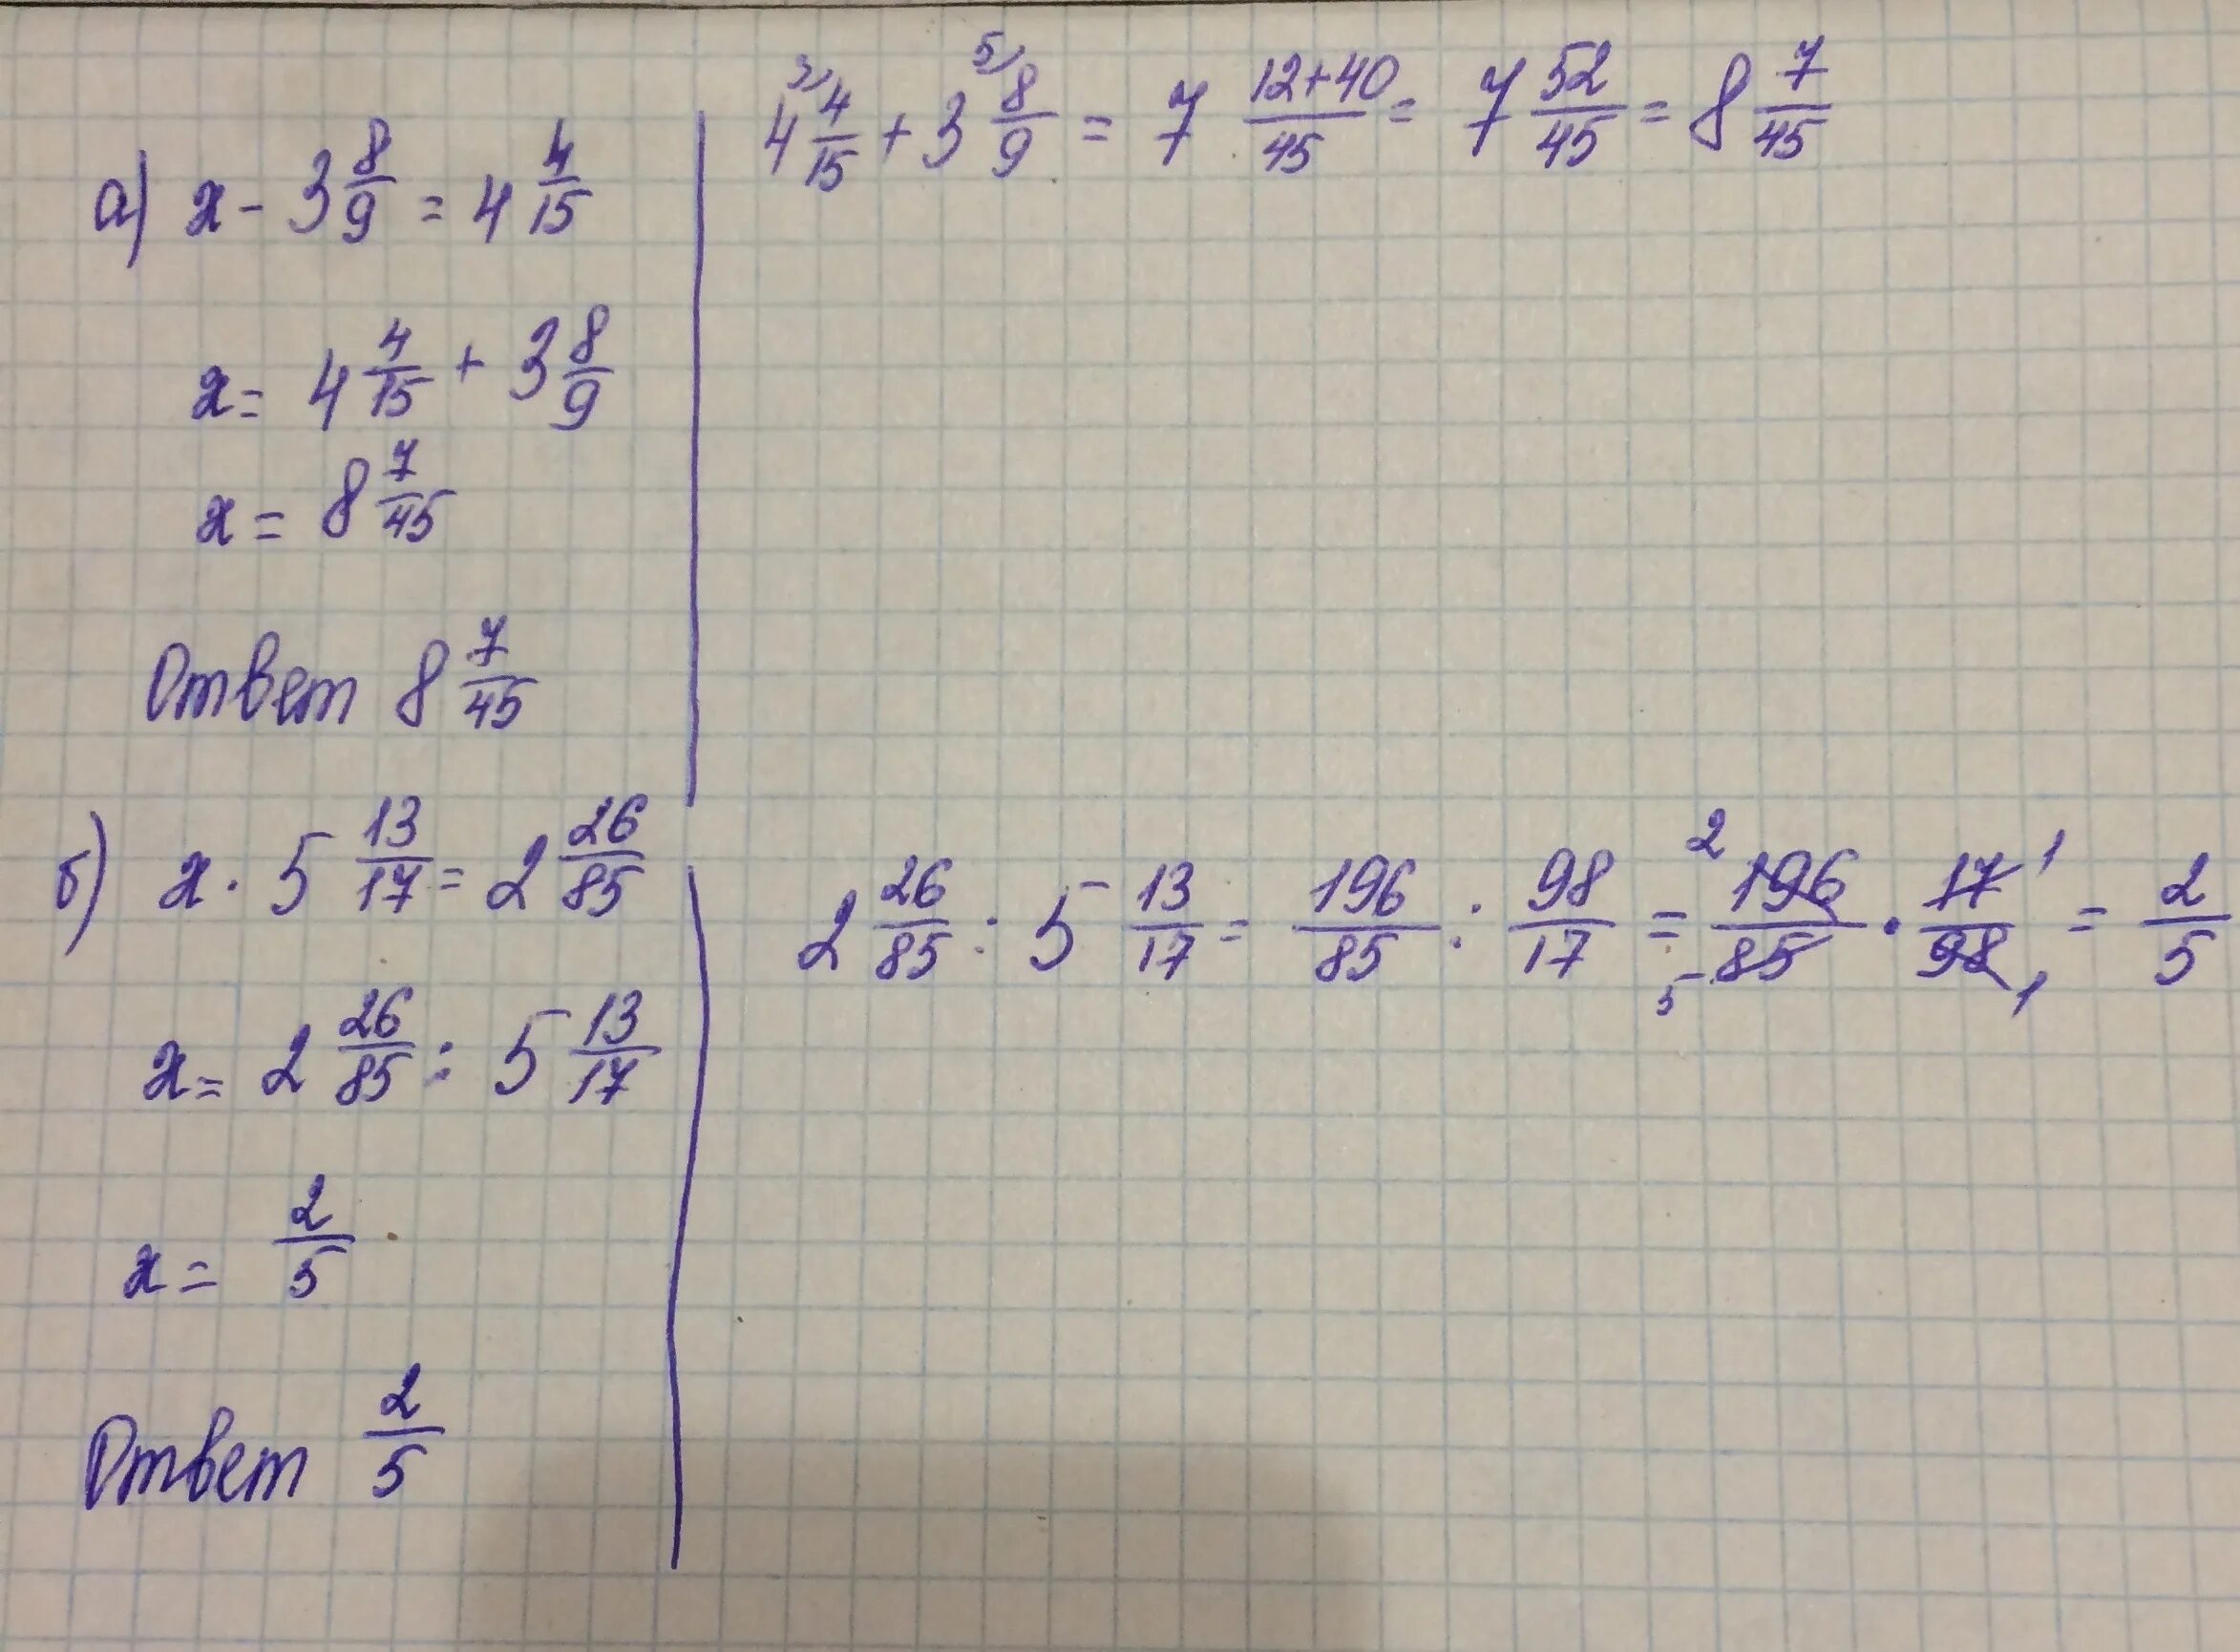 4x 5 13 8 9 решите. 4х/3-17+3х-17/4=х+5/2. 4х 5 13 8 9 решение уравнение. 4х+5/13 8/9. Х*3/5=-4/15.